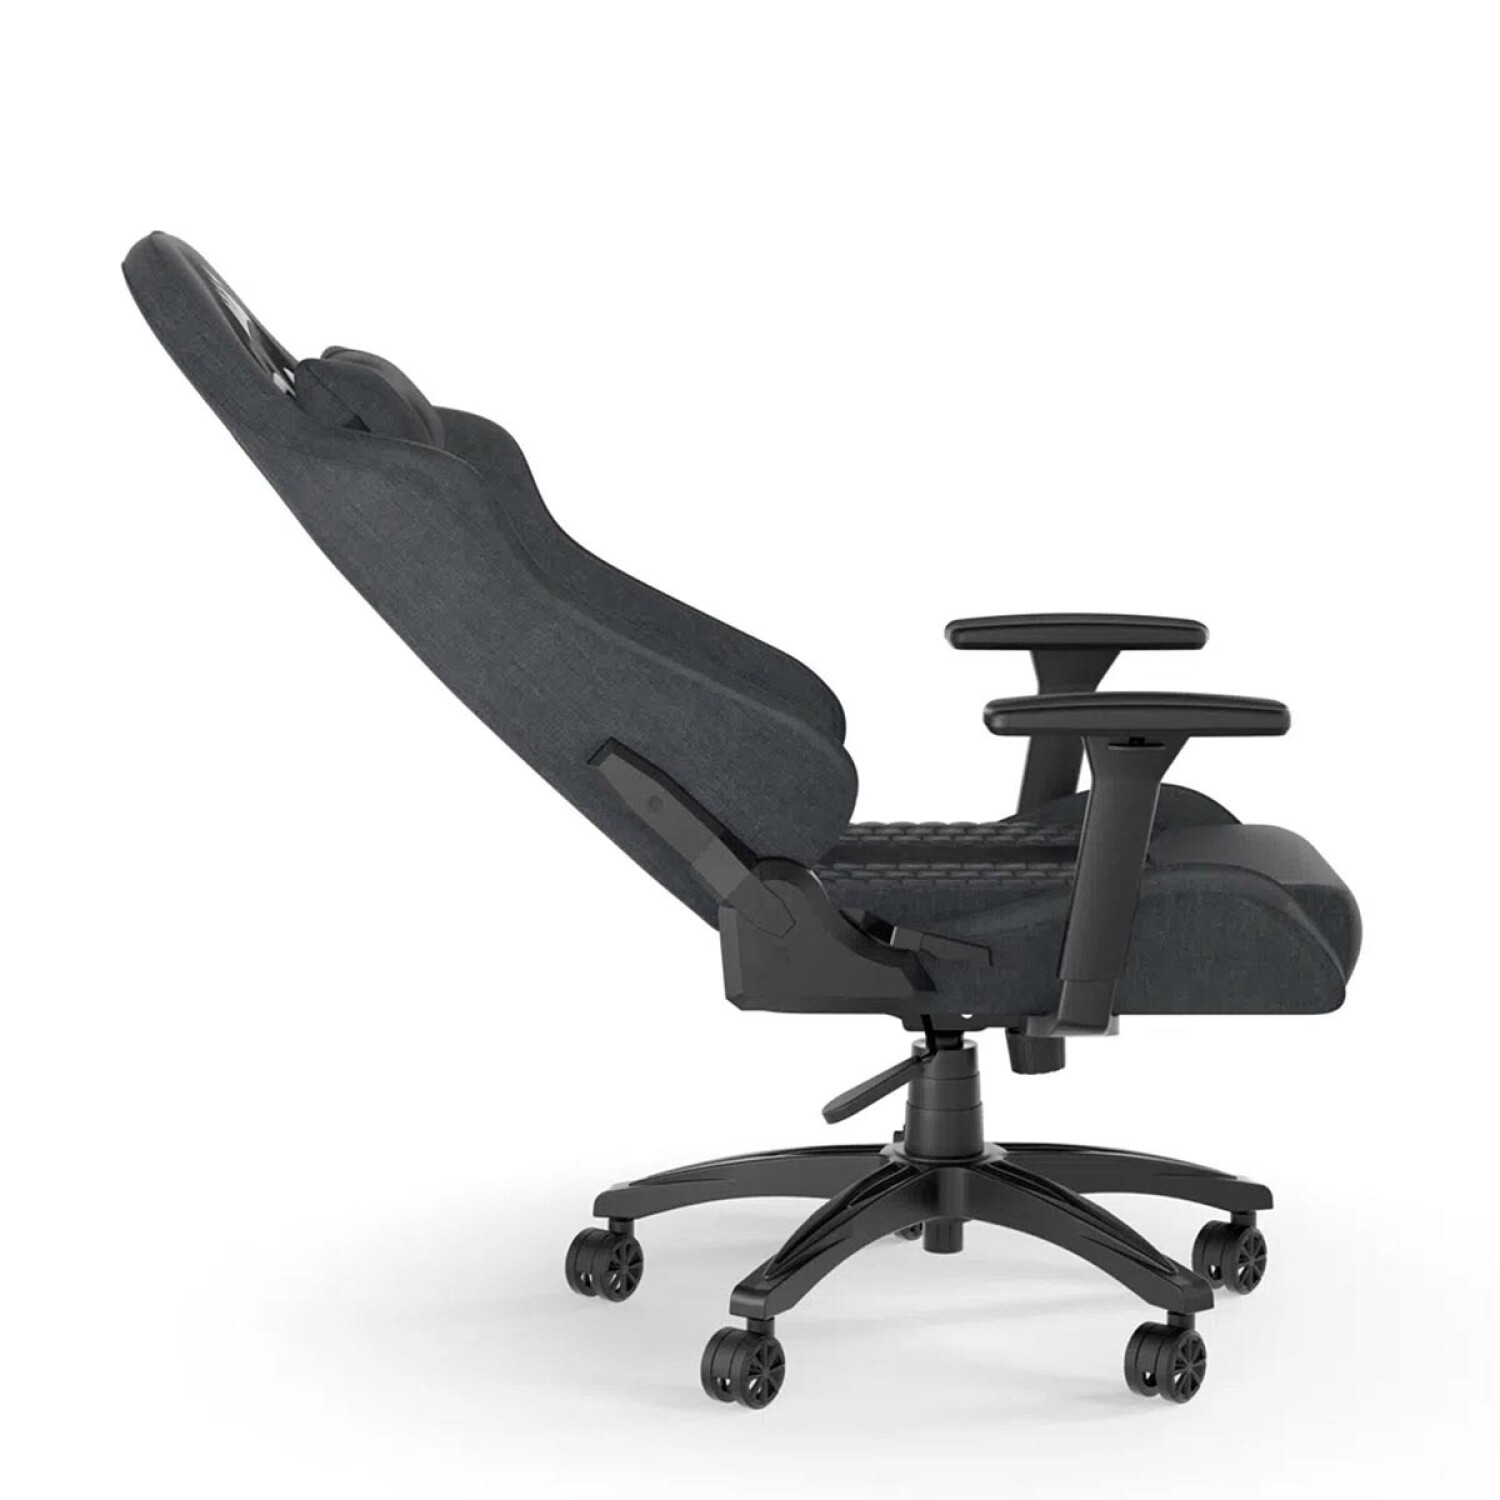 Intcomex te ofrece diseño y relajación con las sillas gamer de Corsair